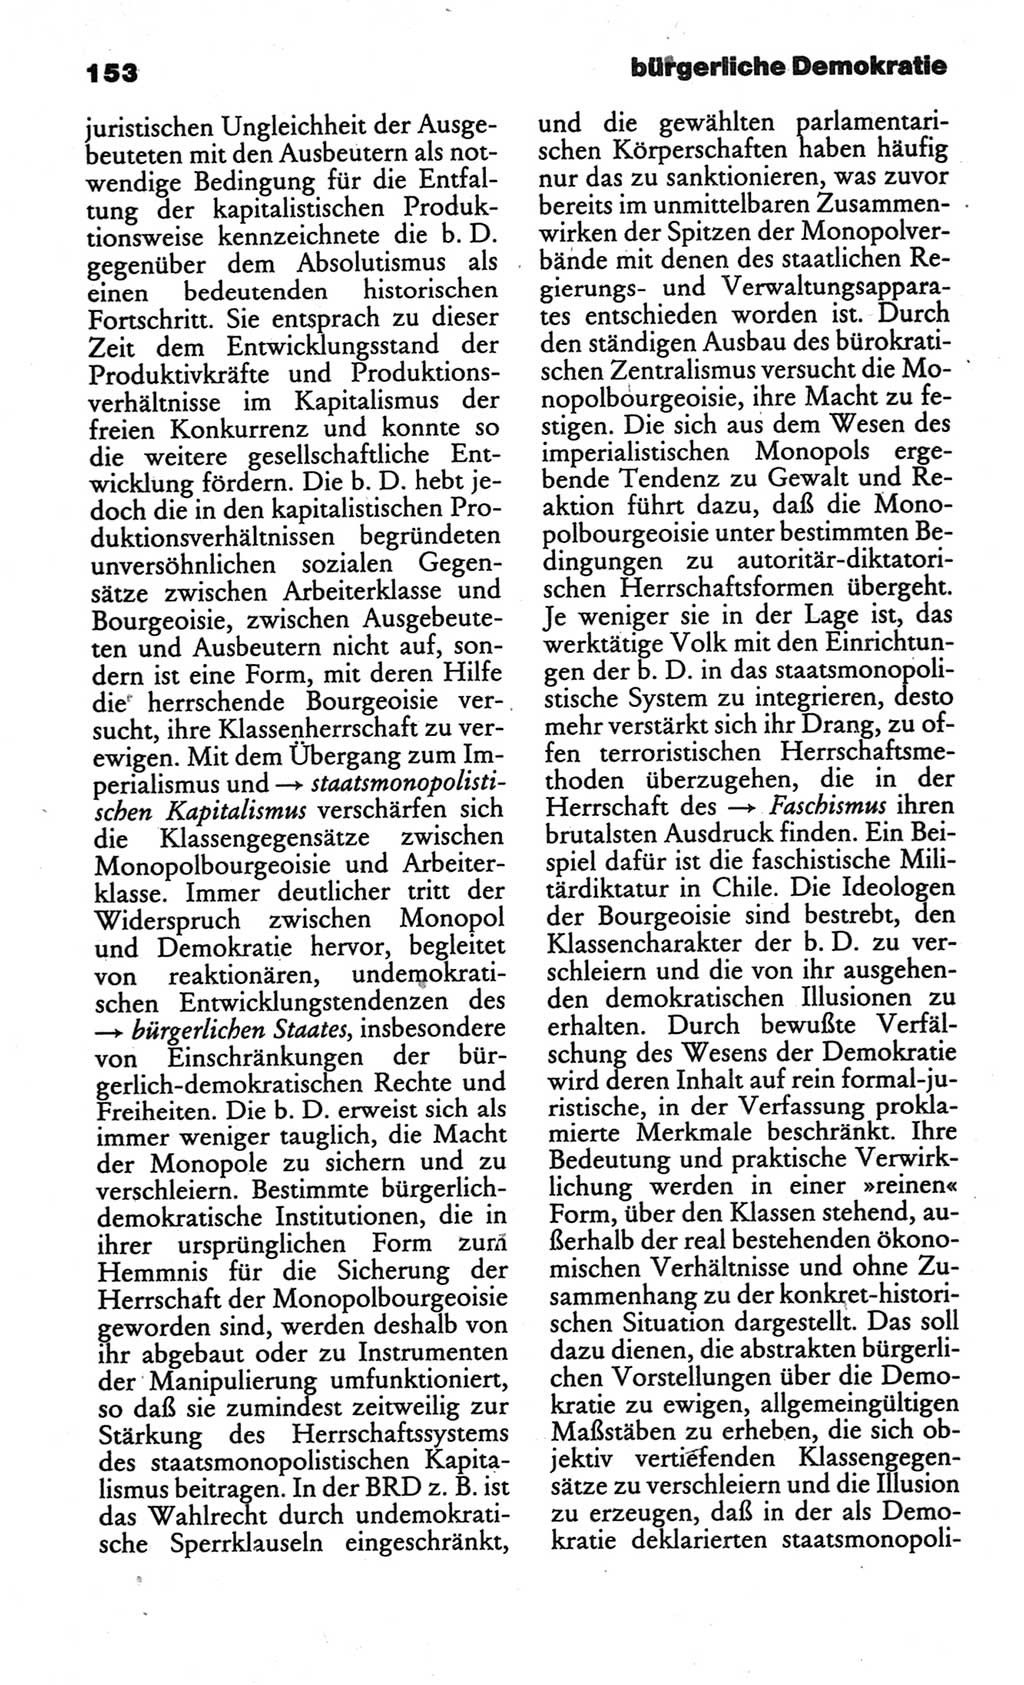 Kleines politisches Wörterbuch [Deutsche Demokratische Republik (DDR)] 1986, Seite 153 (Kl. pol. Wb. DDR 1986, S. 153)